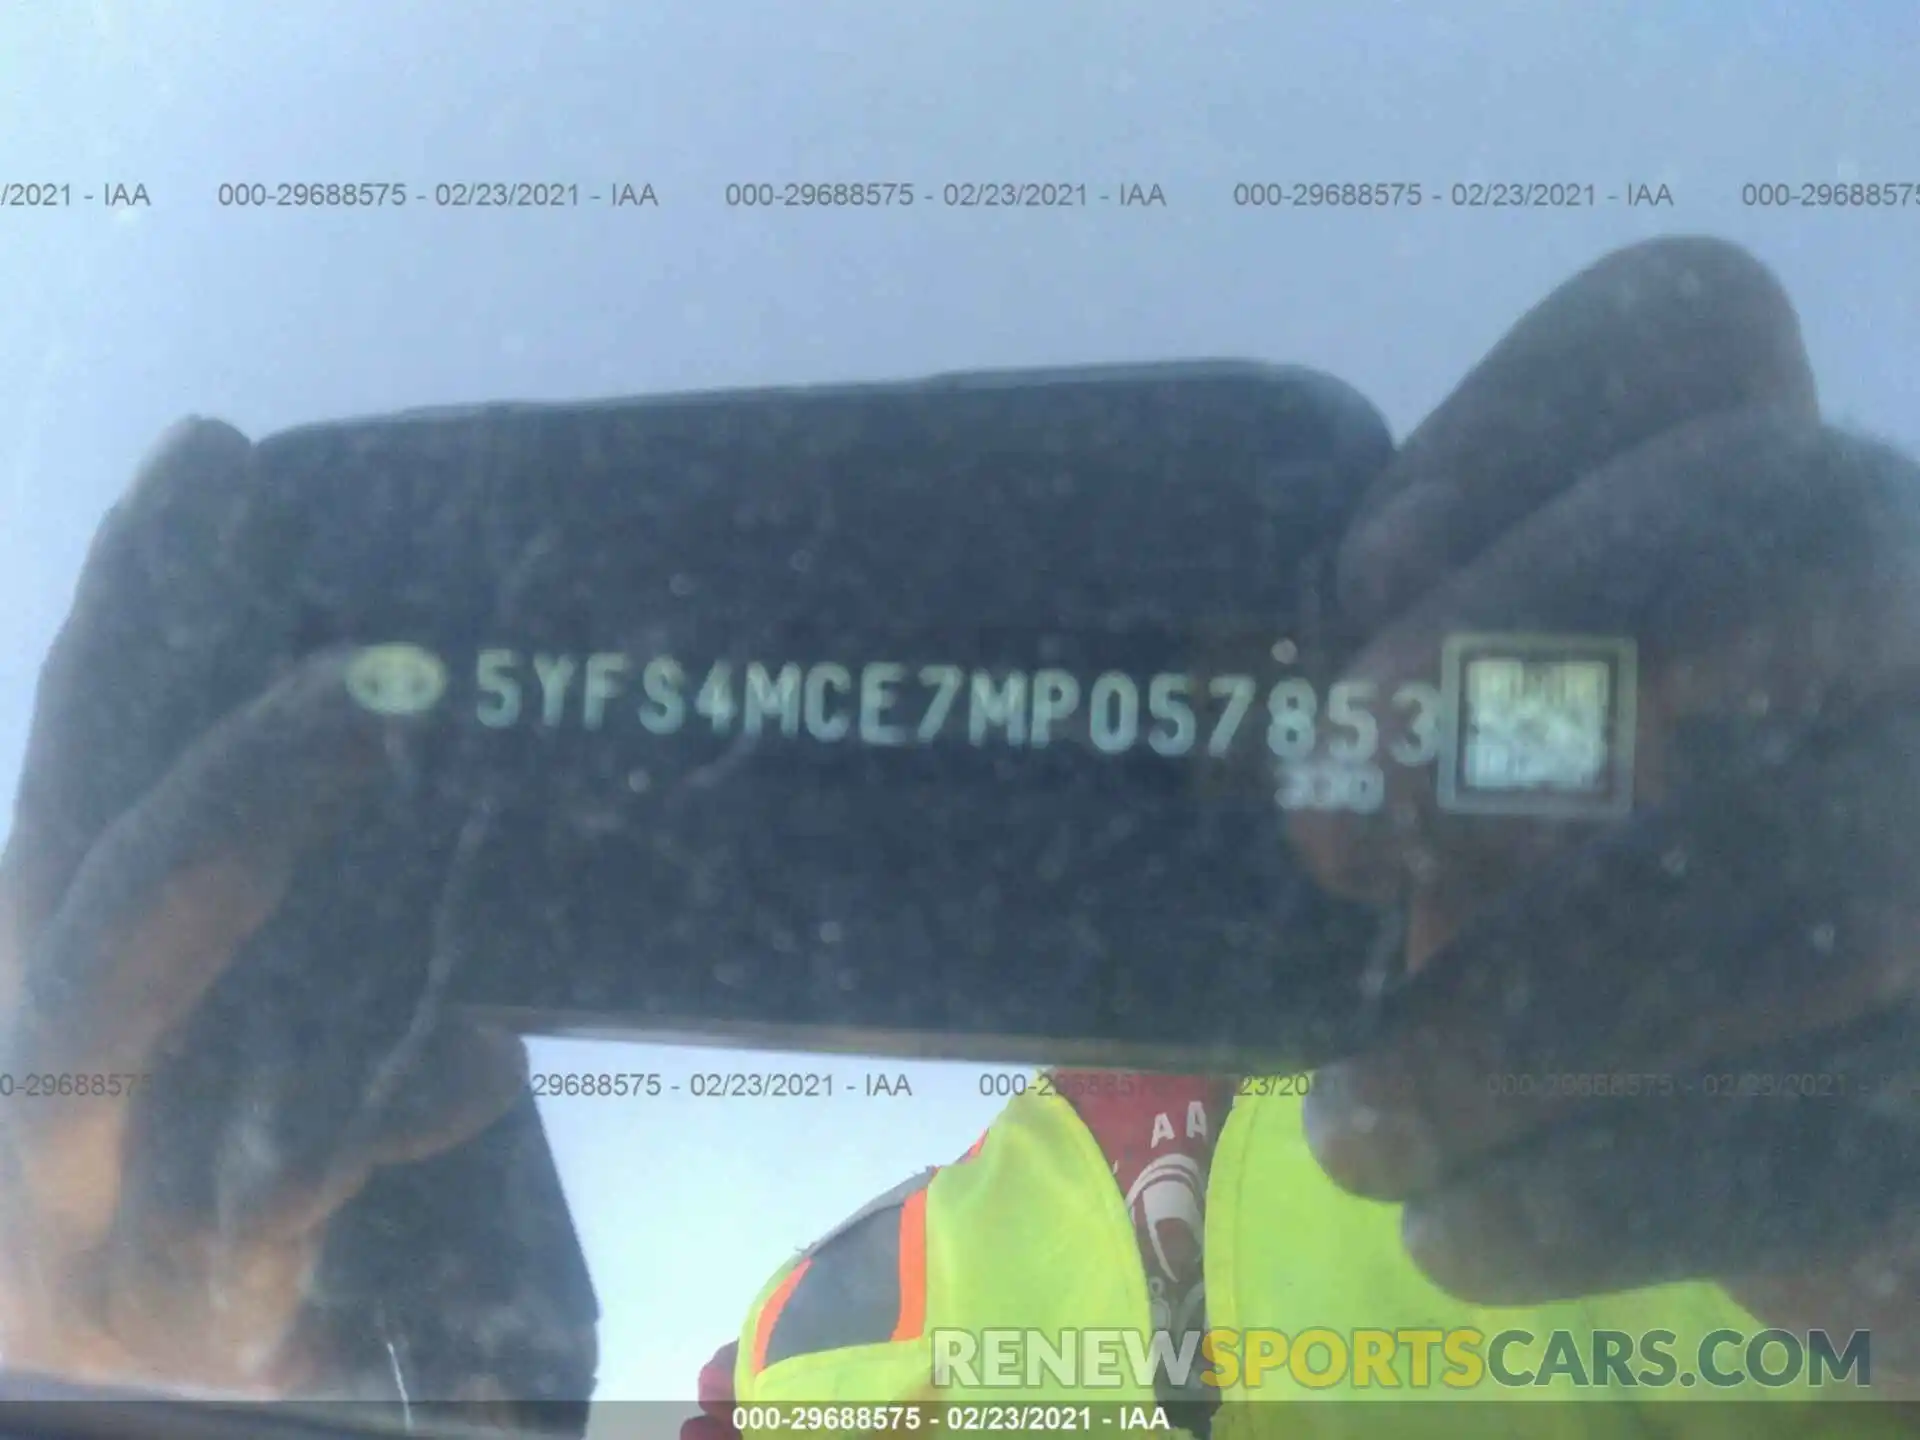 9 Фотография поврежденного автомобиля 5YFS4MCE7MP057853 TOYOTA COROLLA 2021